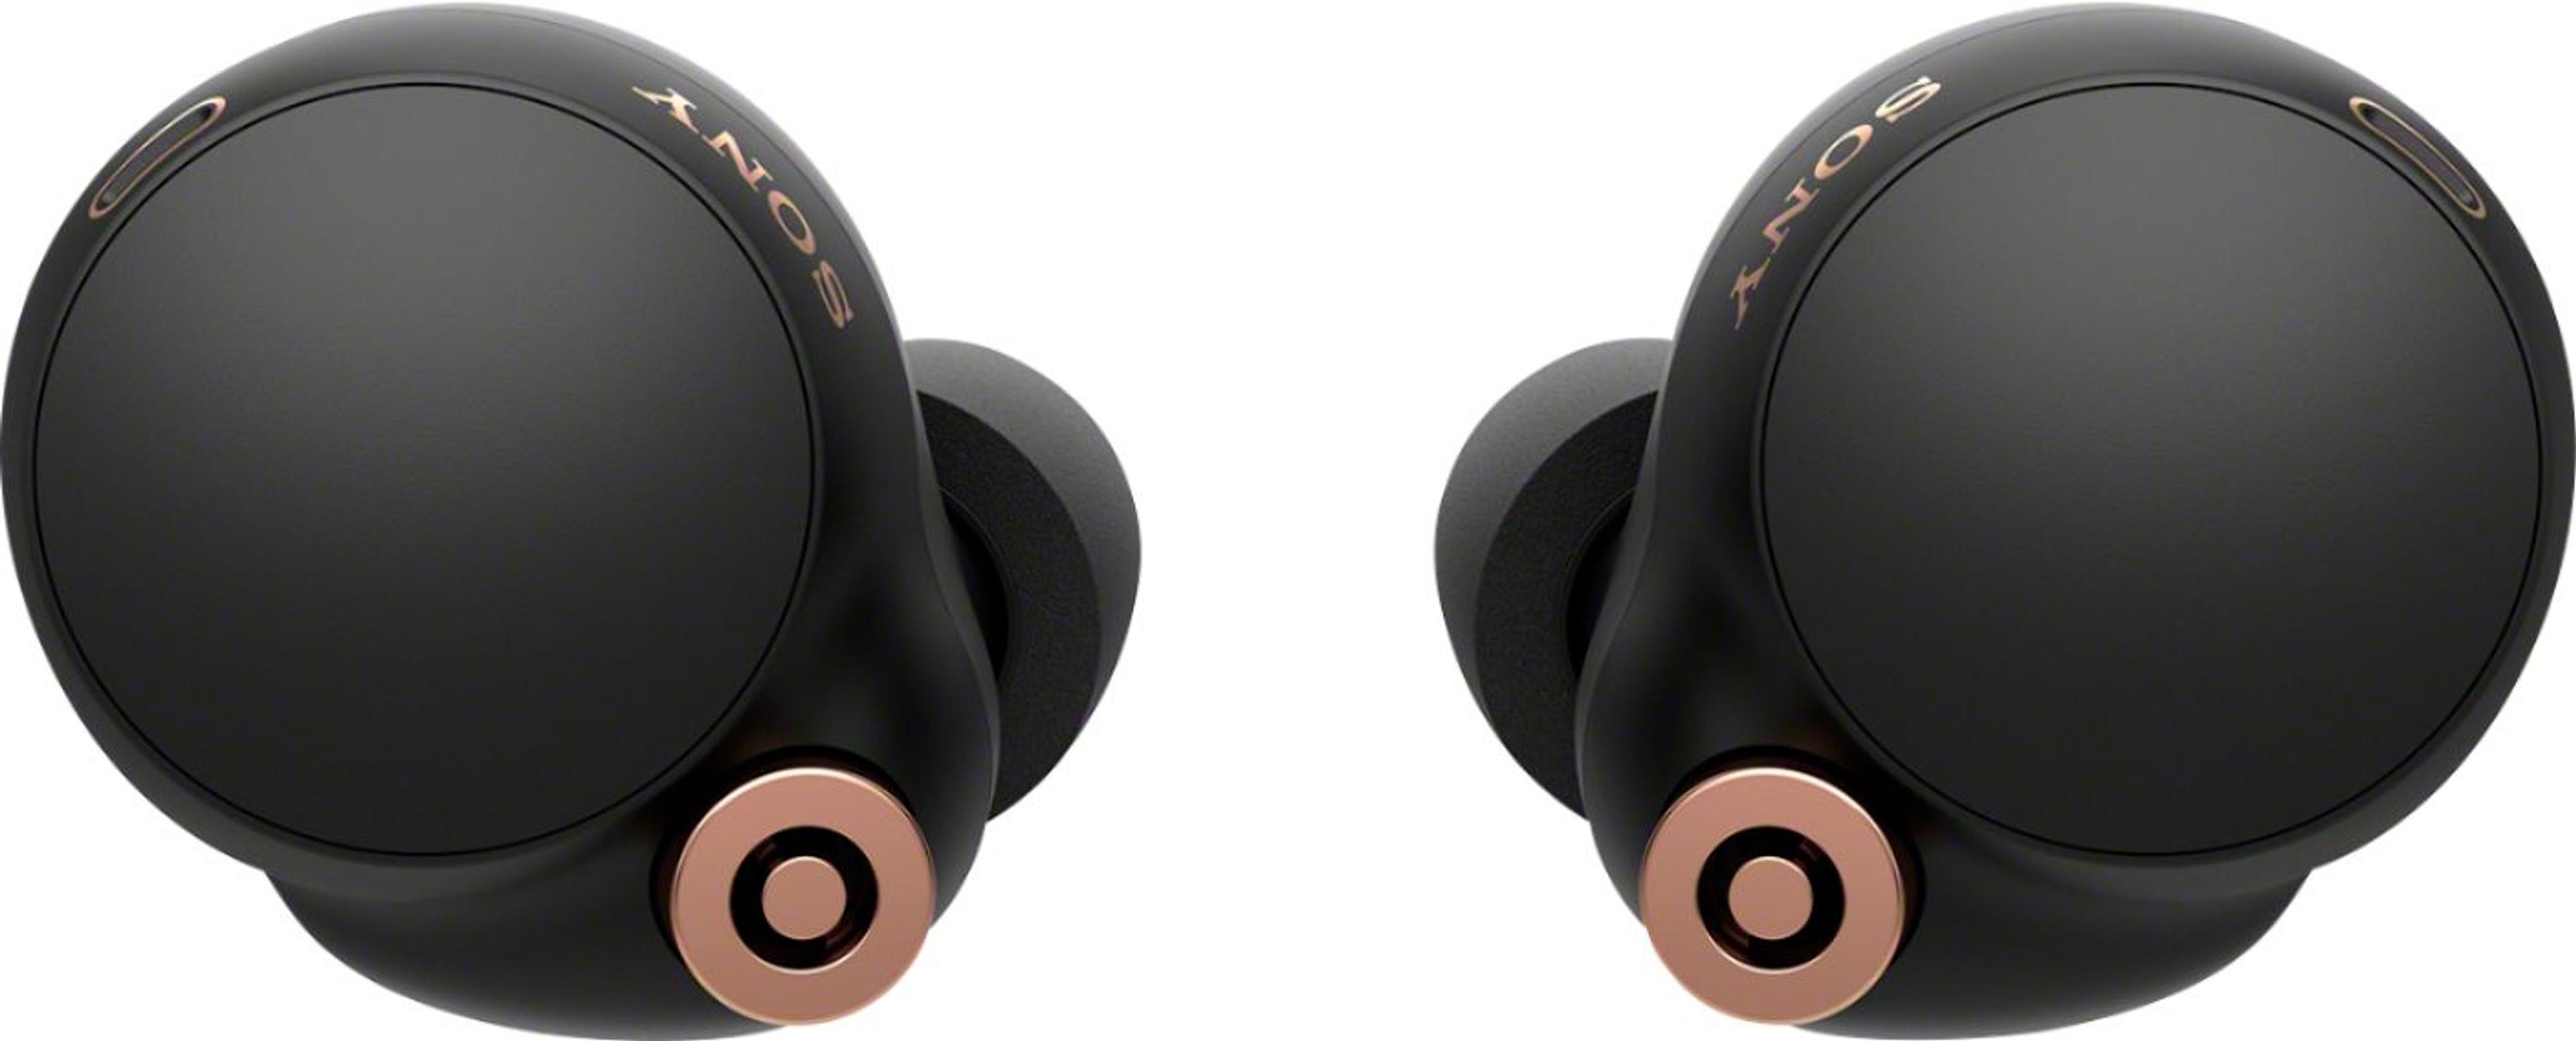 Sony WF-1000XM4 True Wireless Noise Cancelling In-Ear Headphones Black WF1000XM4/B - Best Buy